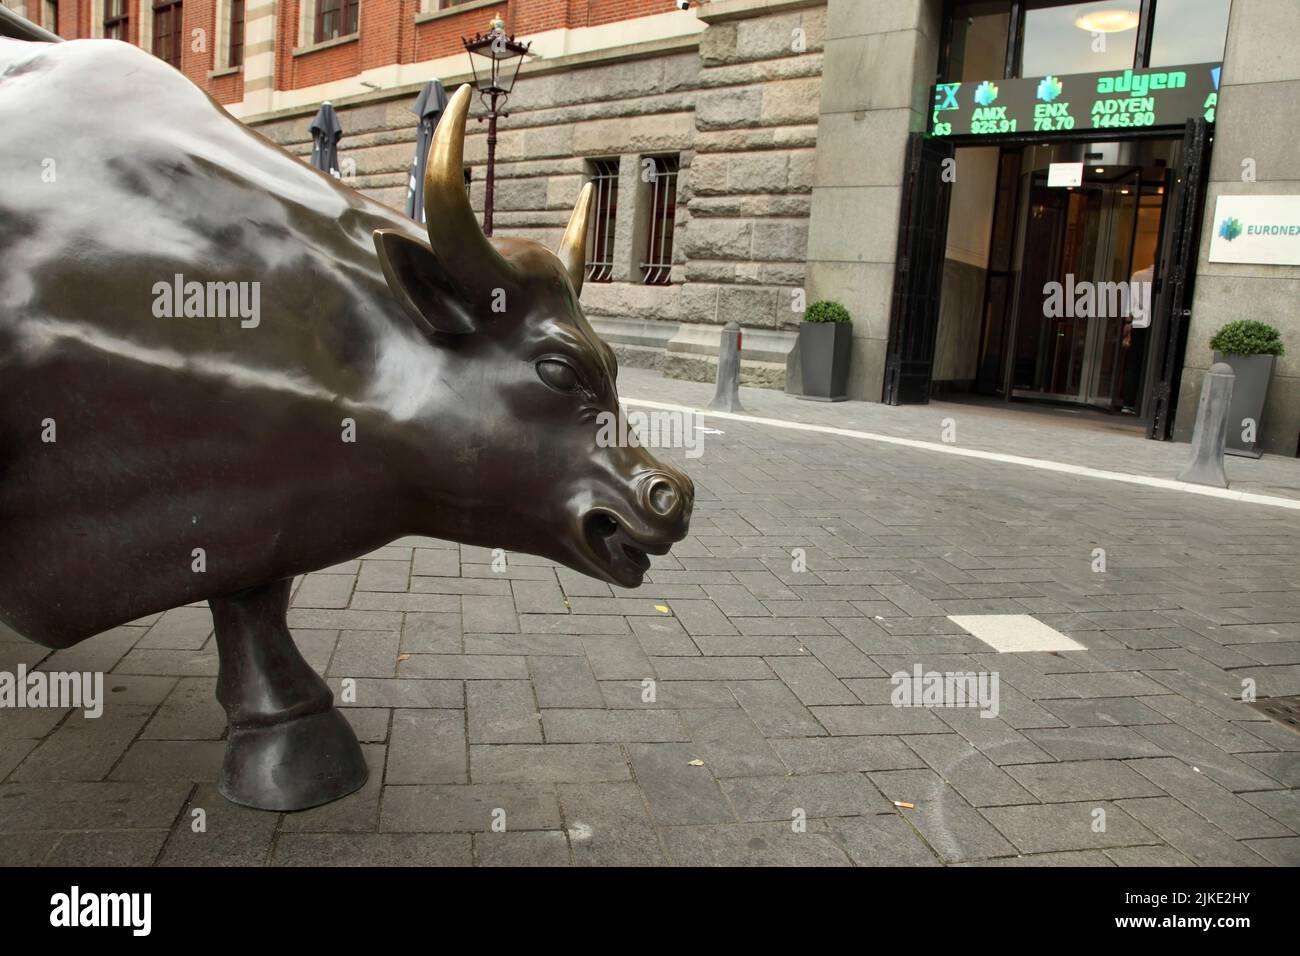 Bull statue outside the Amsterdam Stock Exchange, Beursplein, Amsterdam, Netherlands. Stock Photo